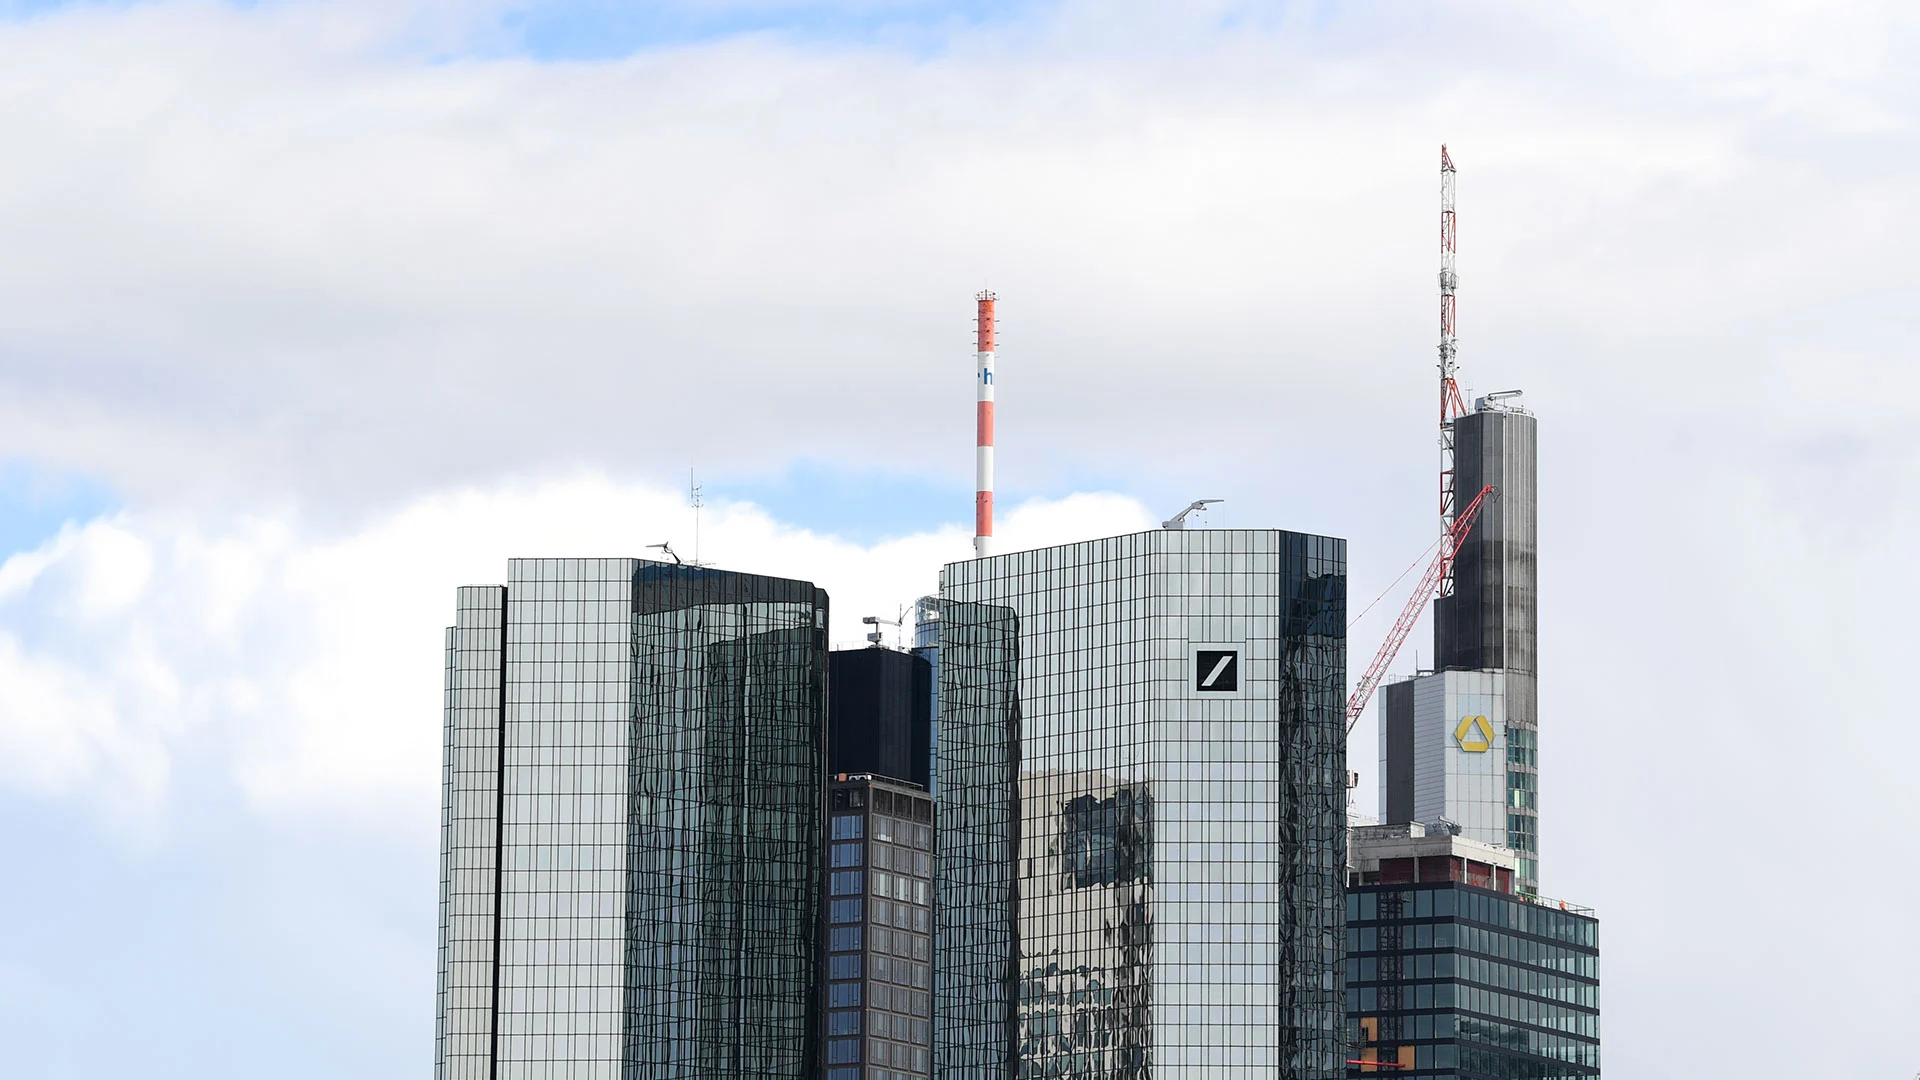 Geht die Rallye bei Deutsche Bank weiter? Alle Dax 40 Aktien im Check (Foto: Shutterstock)